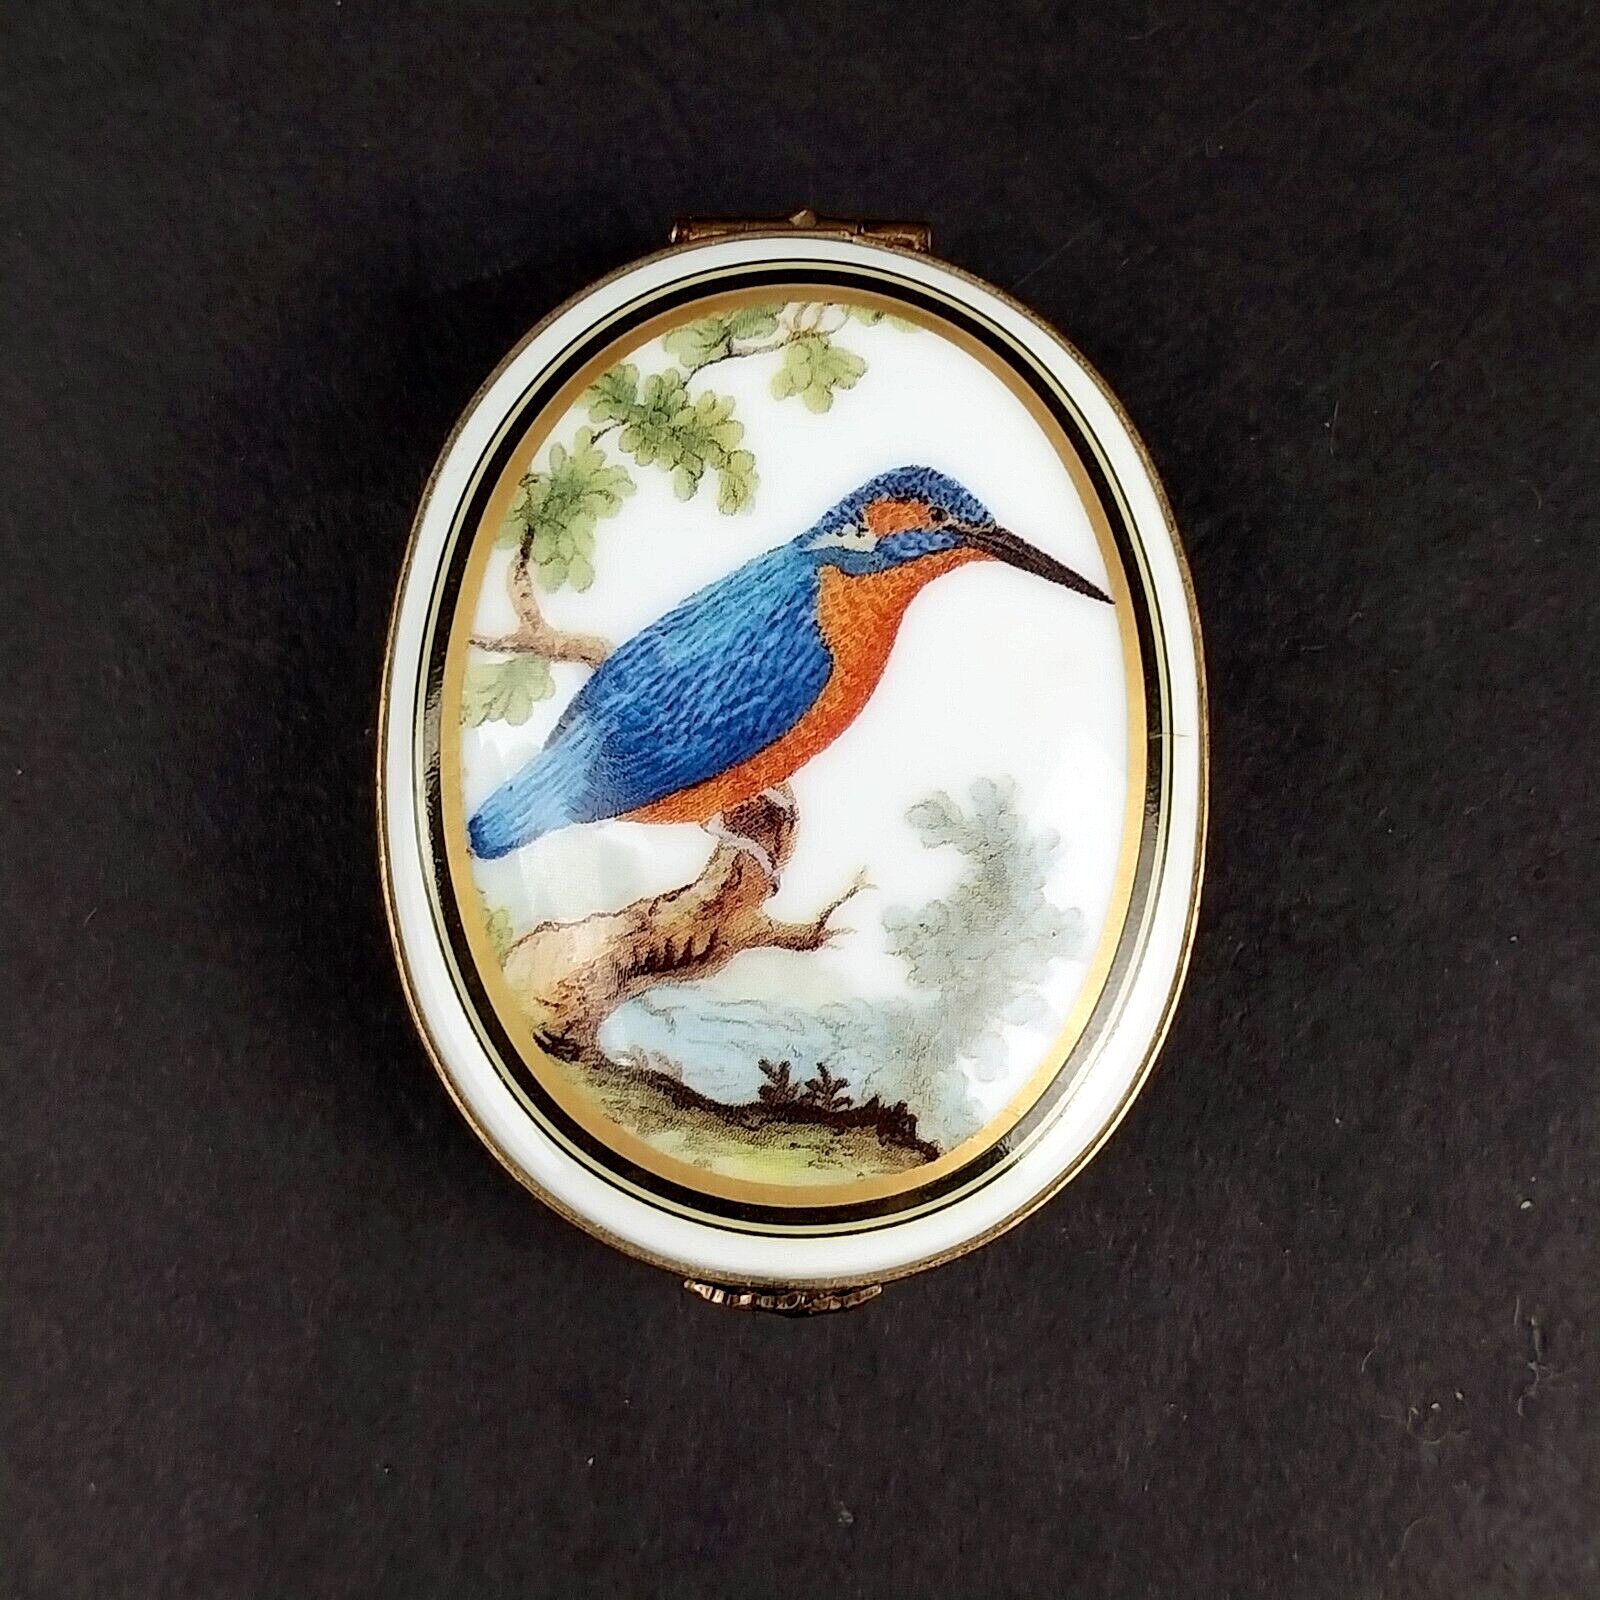 Vintage Ancienne Royale Limoges France Porcelain Oval Trinket Box w/ Kingfisher